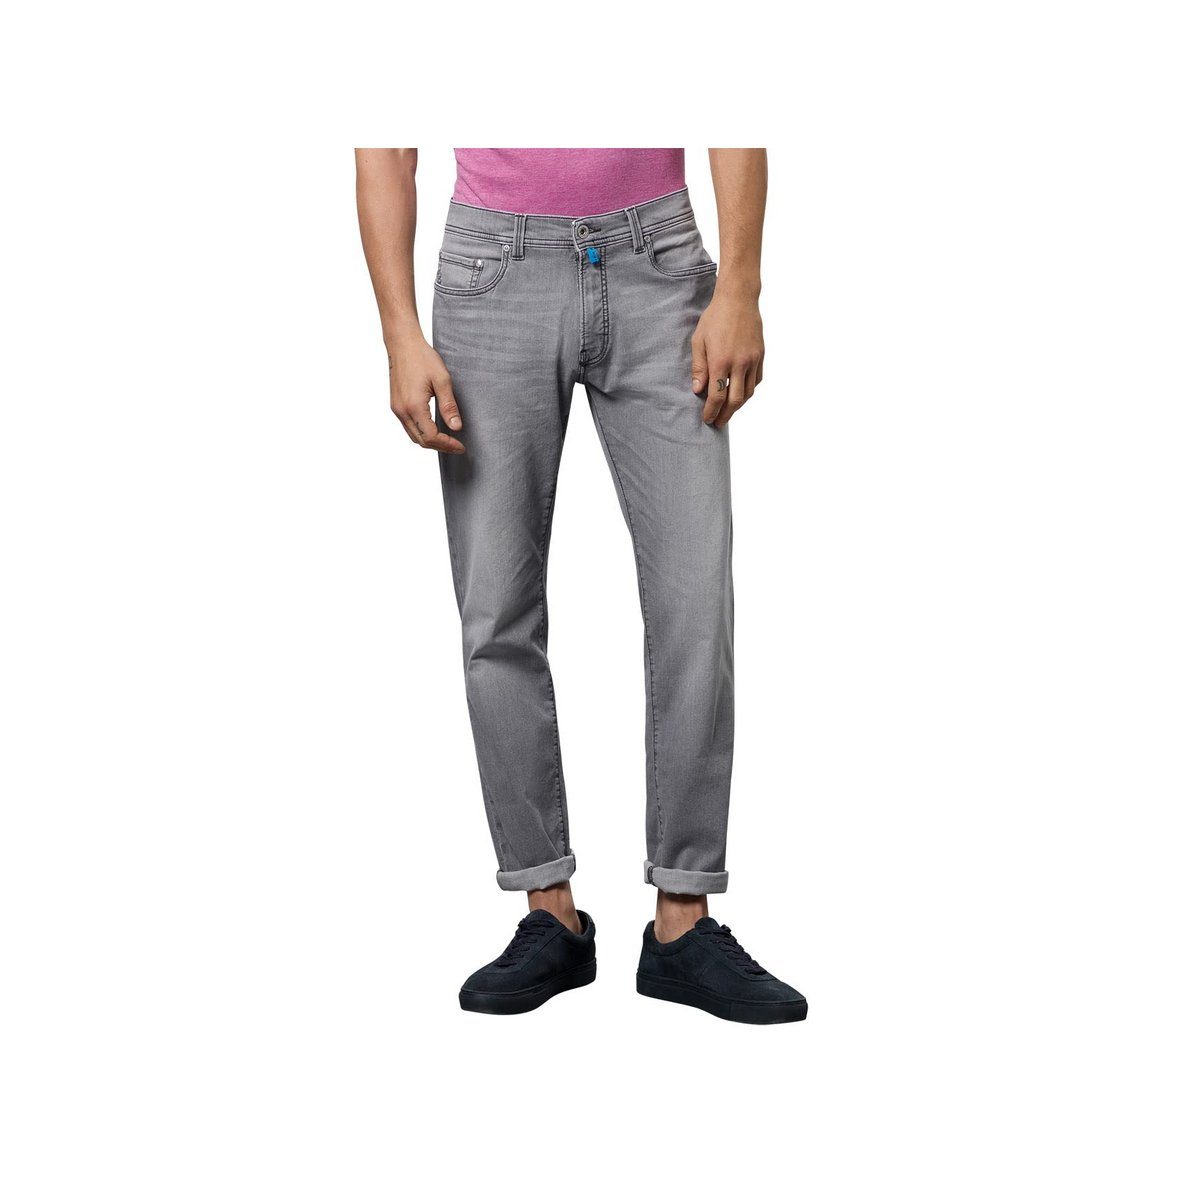 (1-tlg) grau Cardin 5-Pocket-Jeans Pierre